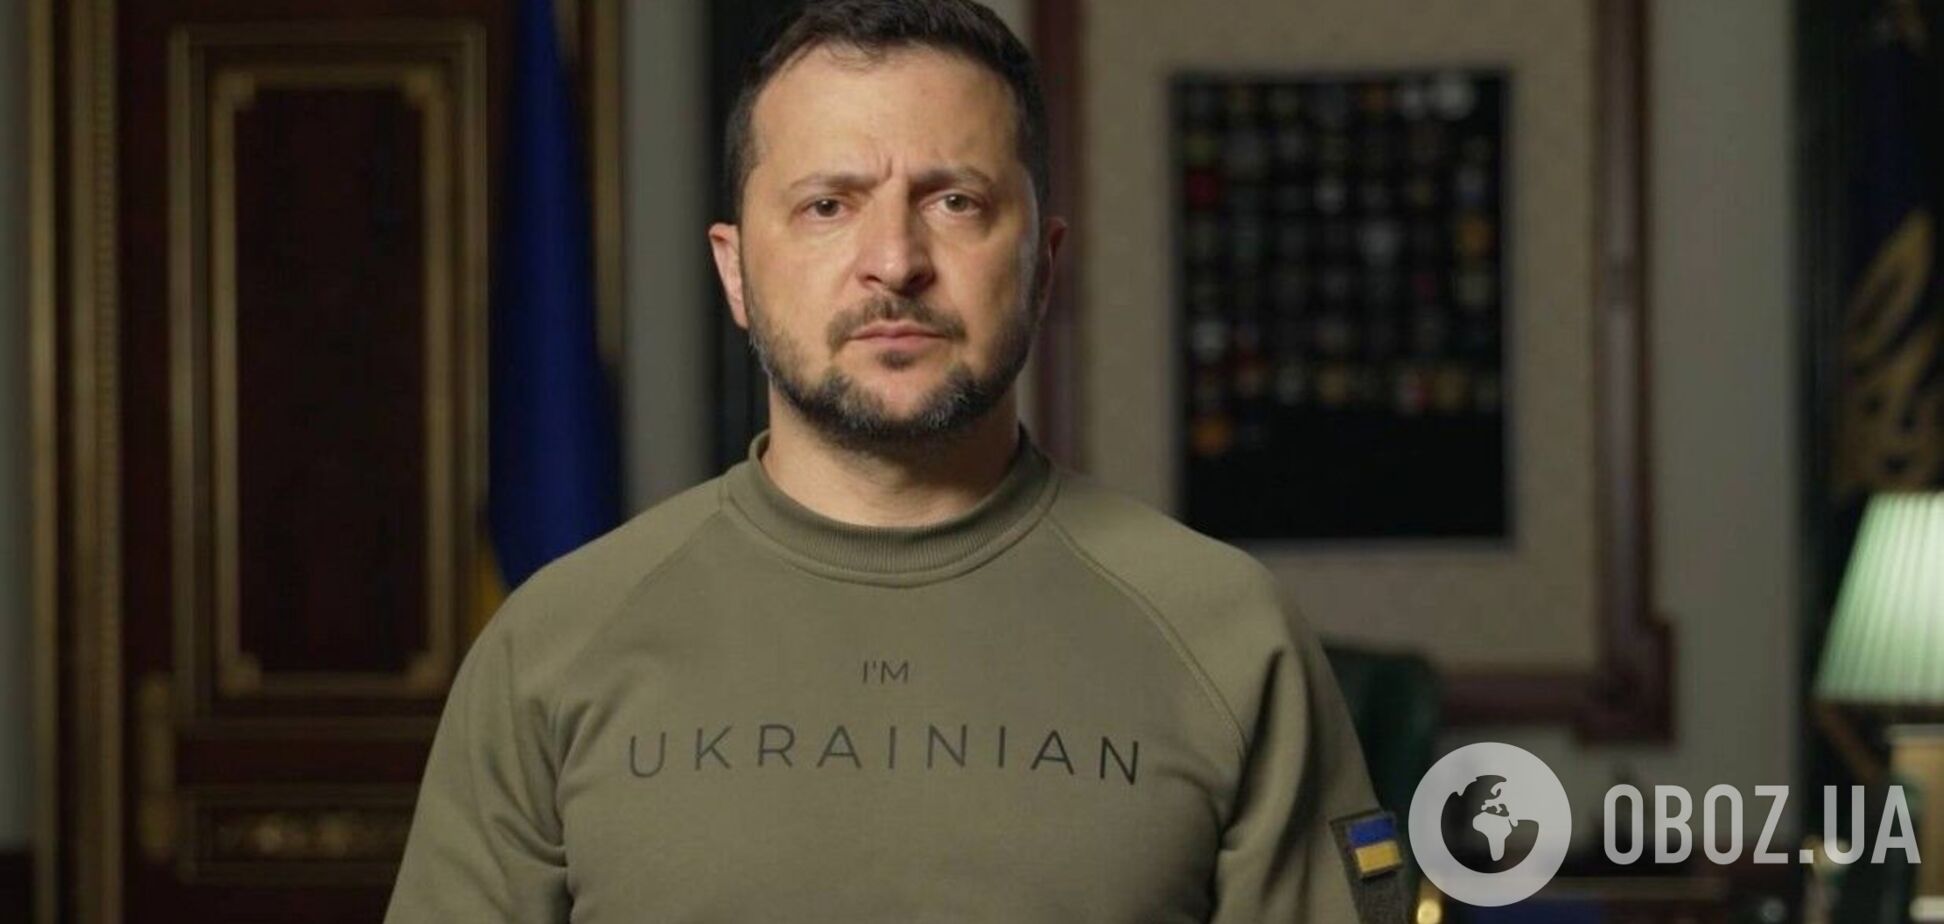 'На разных участках есть движение вперед': Зеленский отметил воинов ВСУ, участвующих в освобождении украинских территорий. Видео